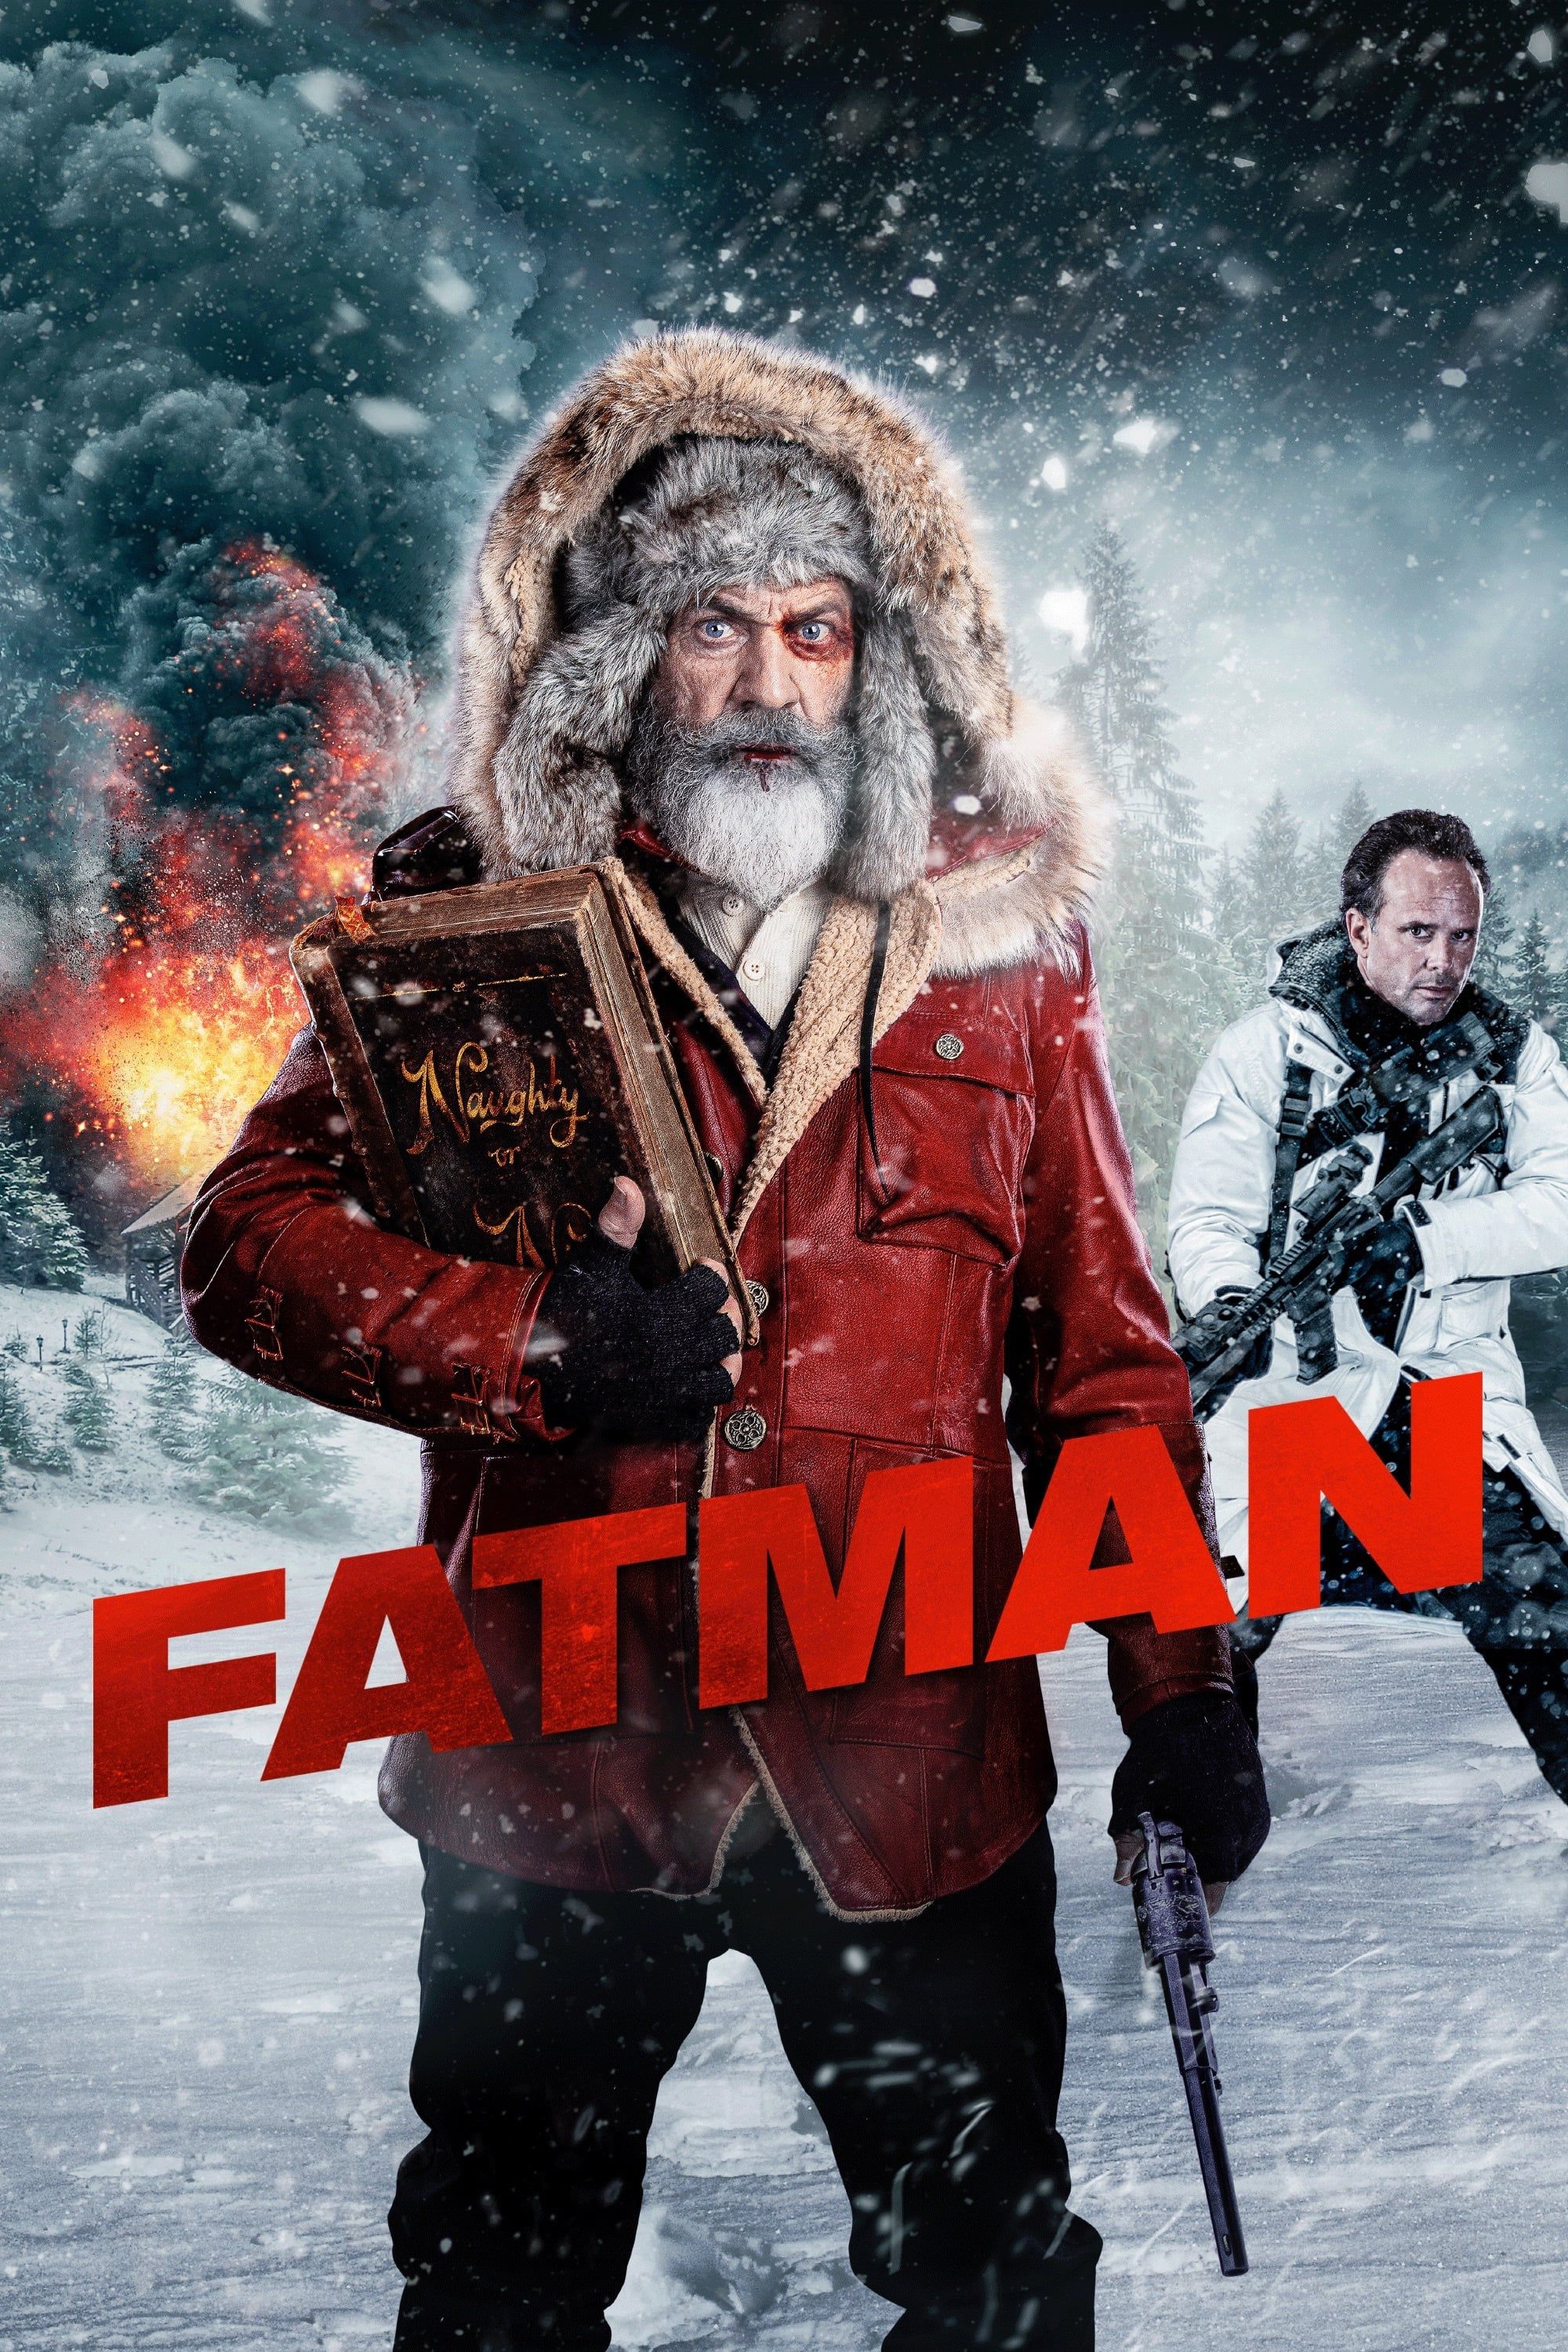 Fatman - Film (2020)